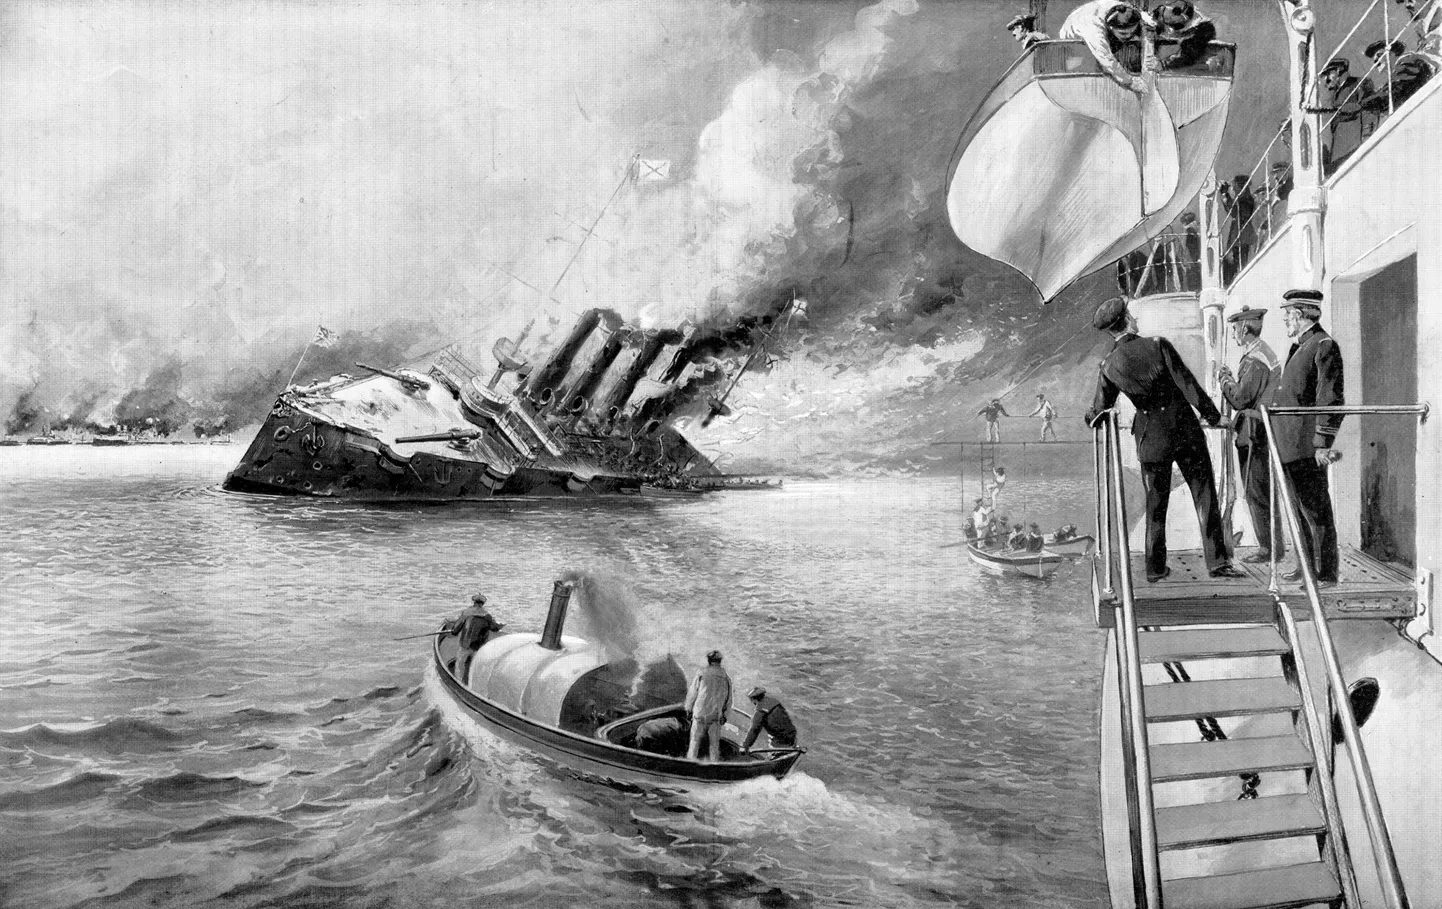 Vene kruiisilaeva uputamine 9. veebruaril artiklis mainitud «Tshempulos» 1904. aasta veebruaris.